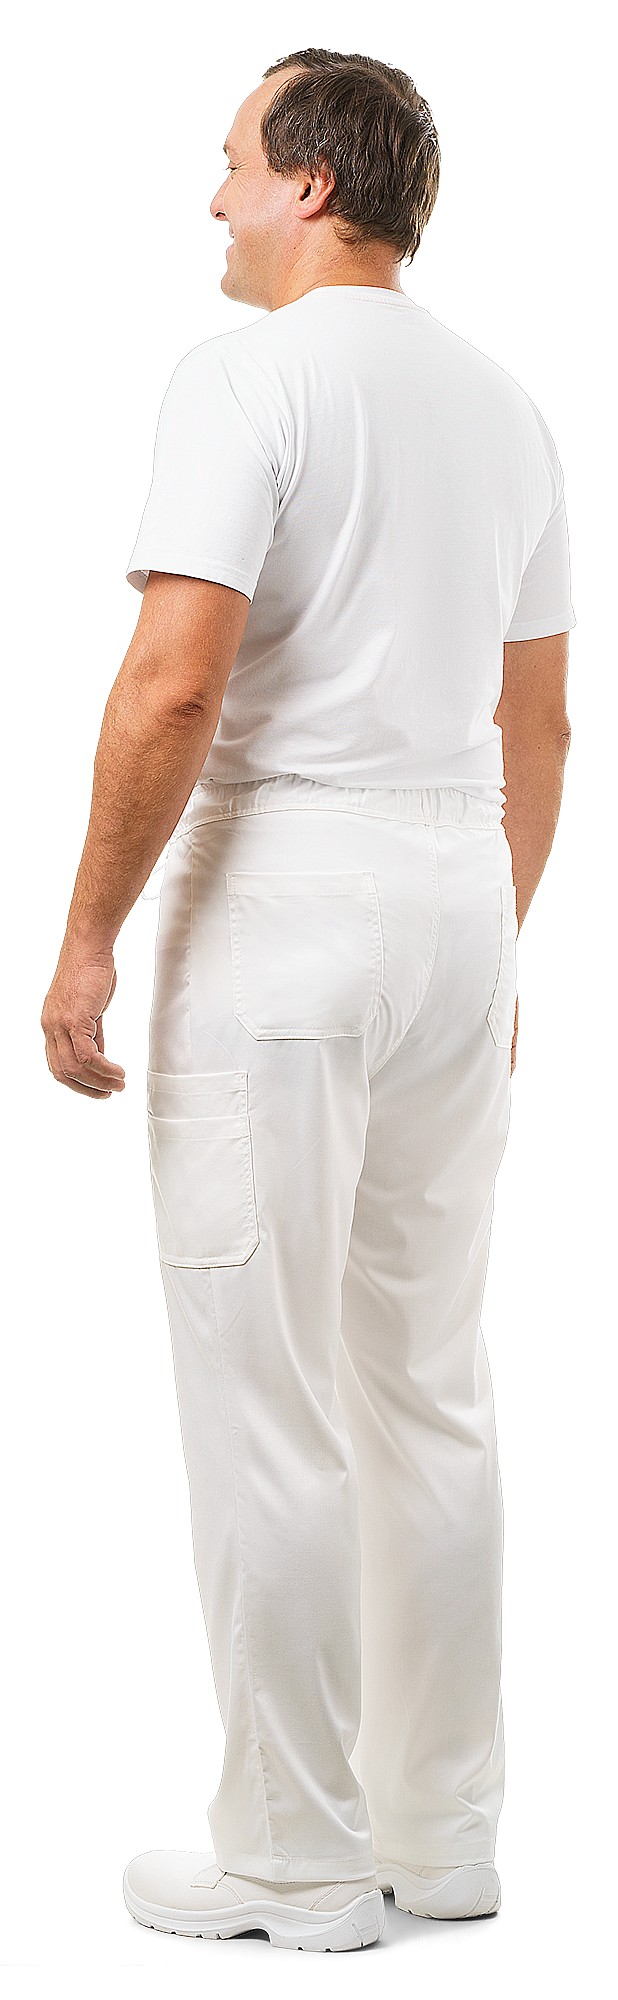 Мужские белые брюки фото